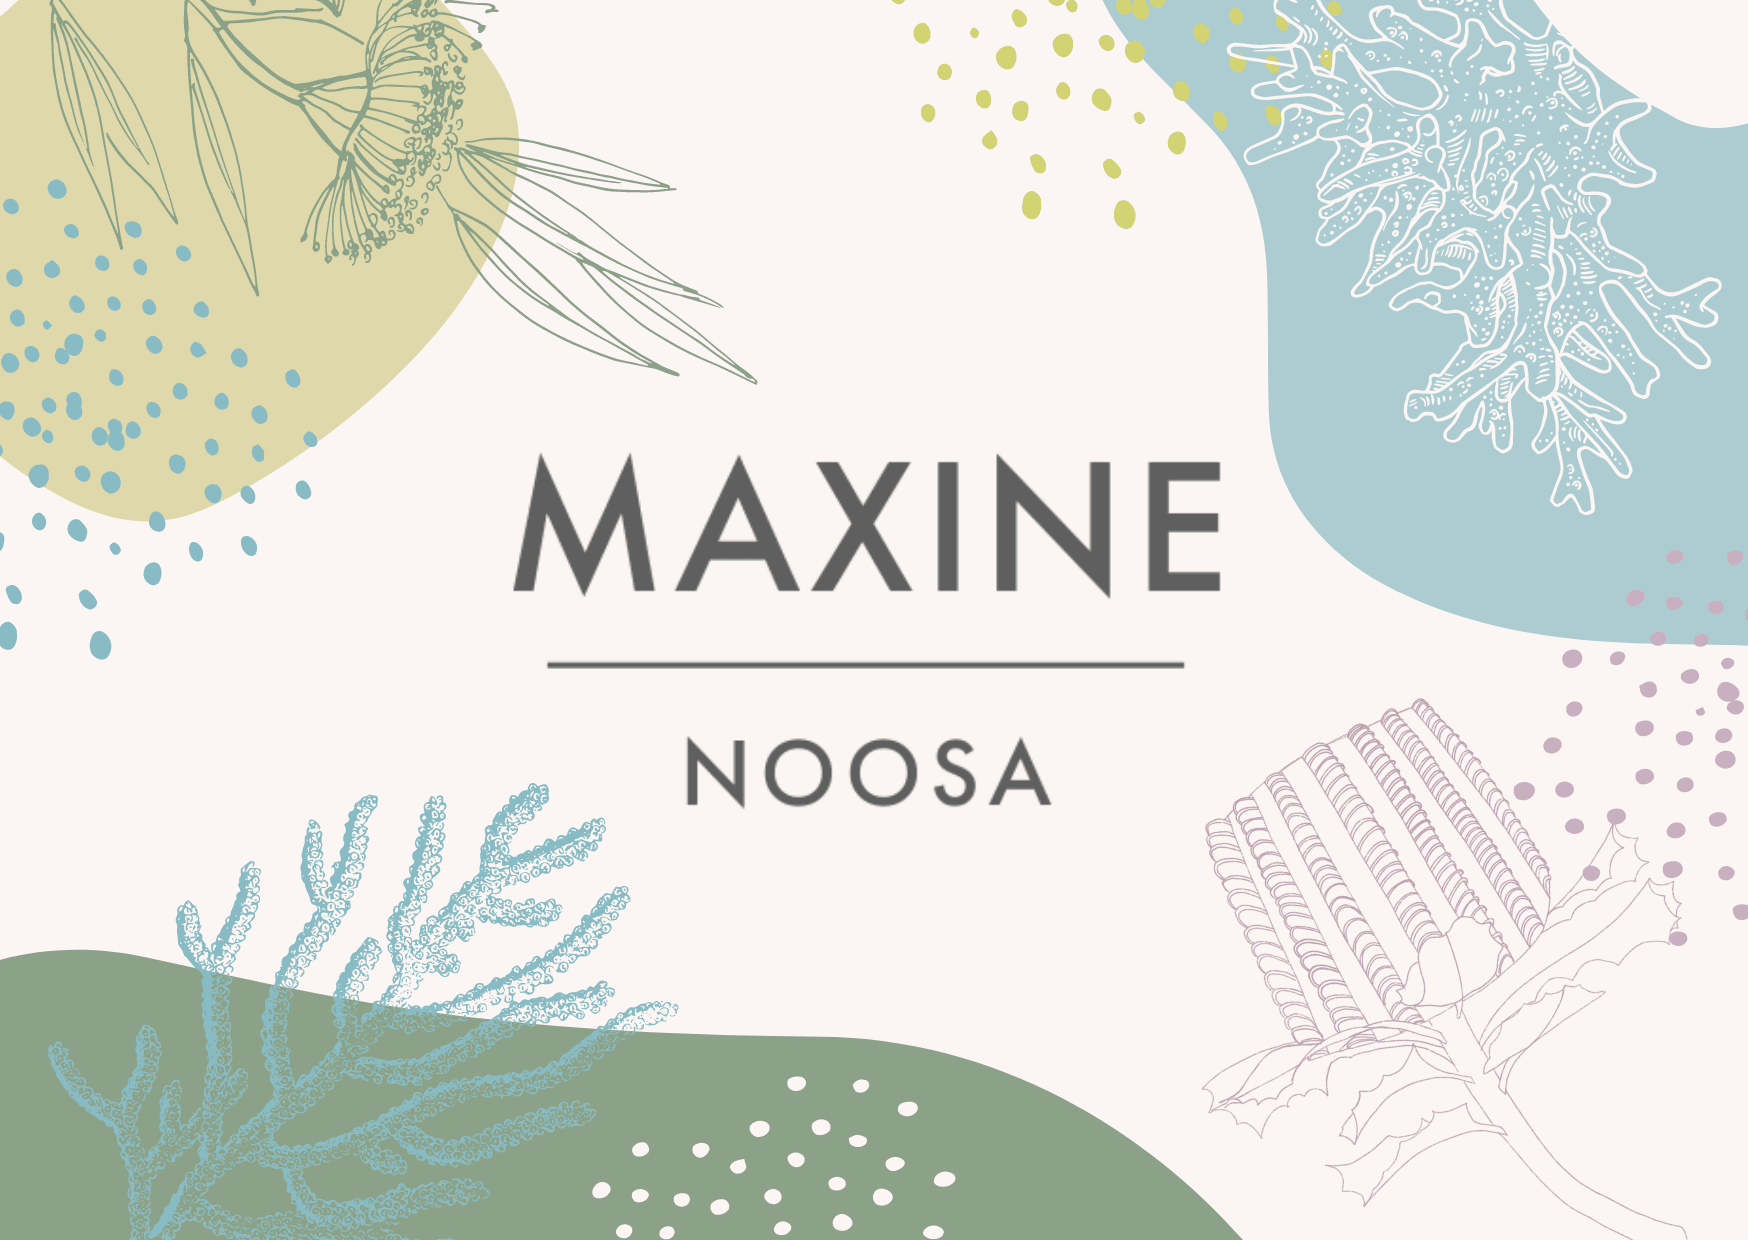 Maxine Noosa Gift Card - Maxine Noosa